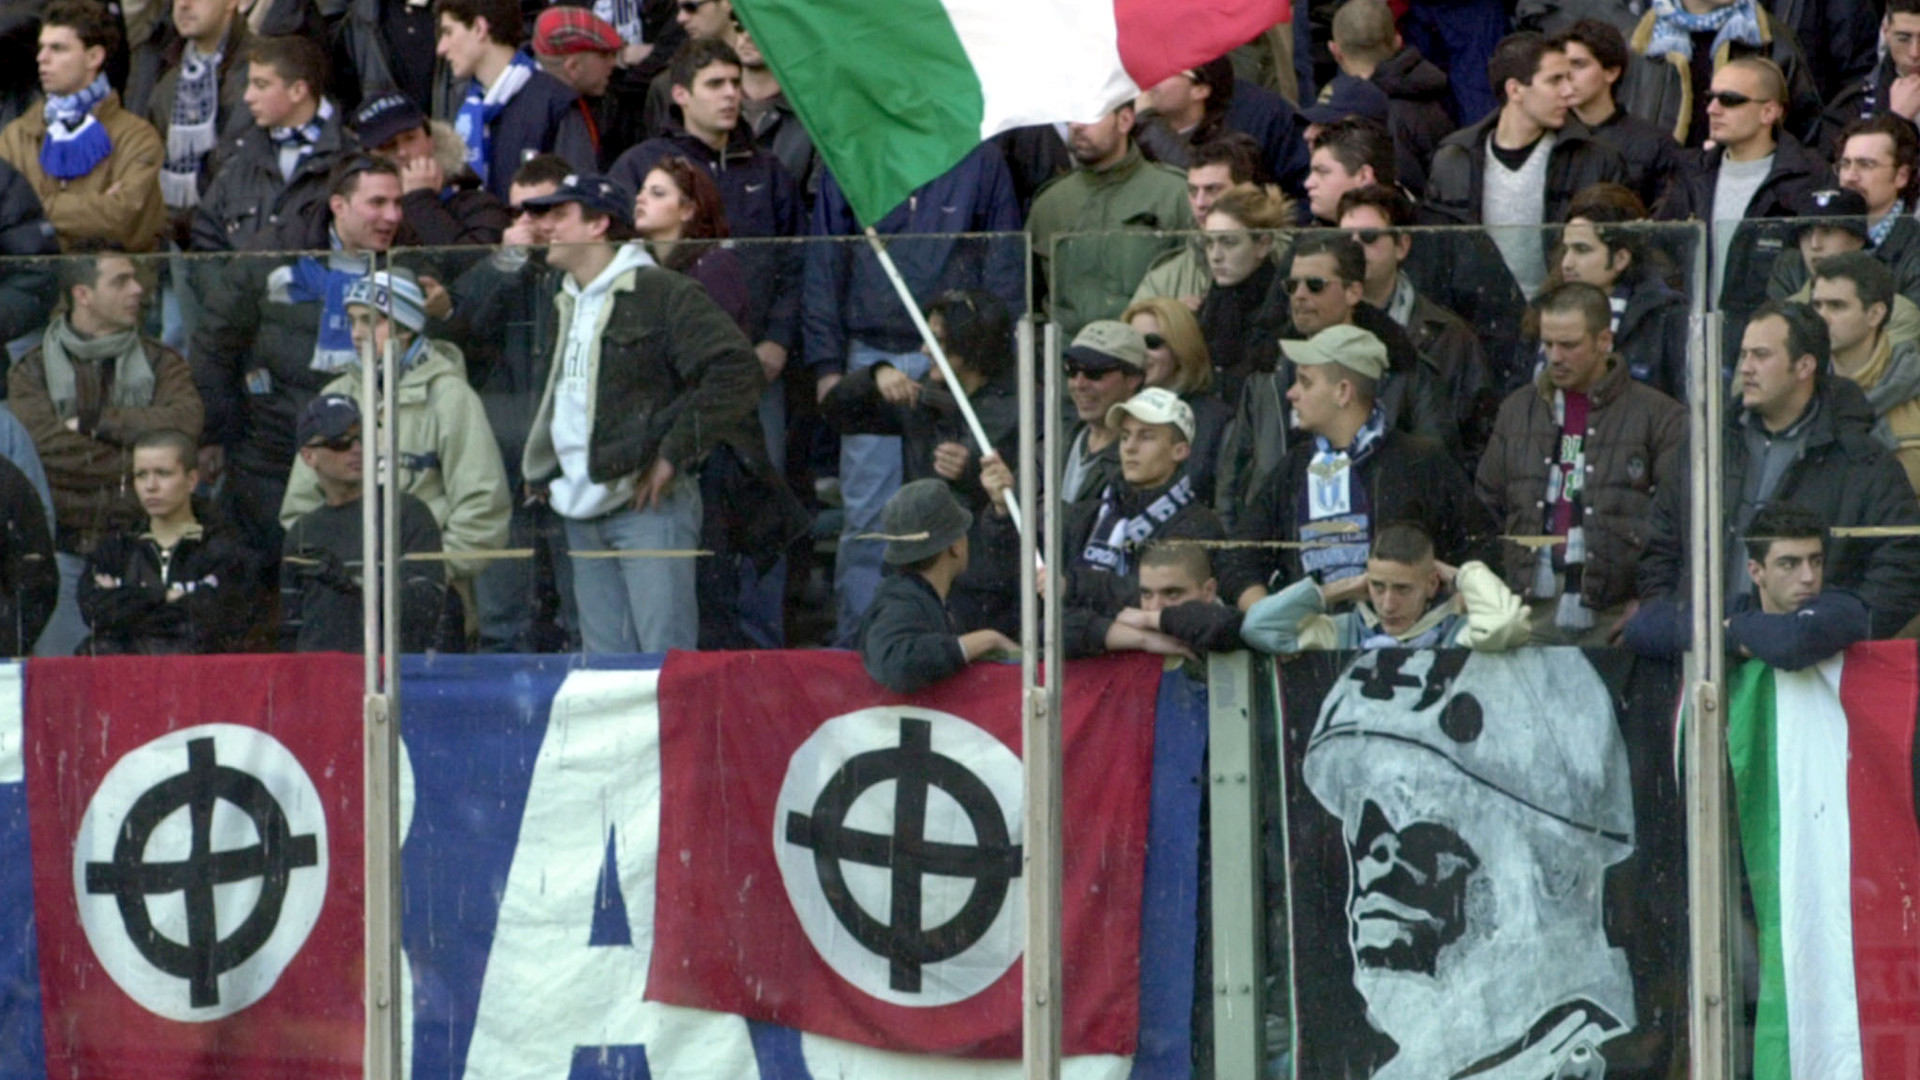 Neofaschisten an einem Fussballspiel in Italien